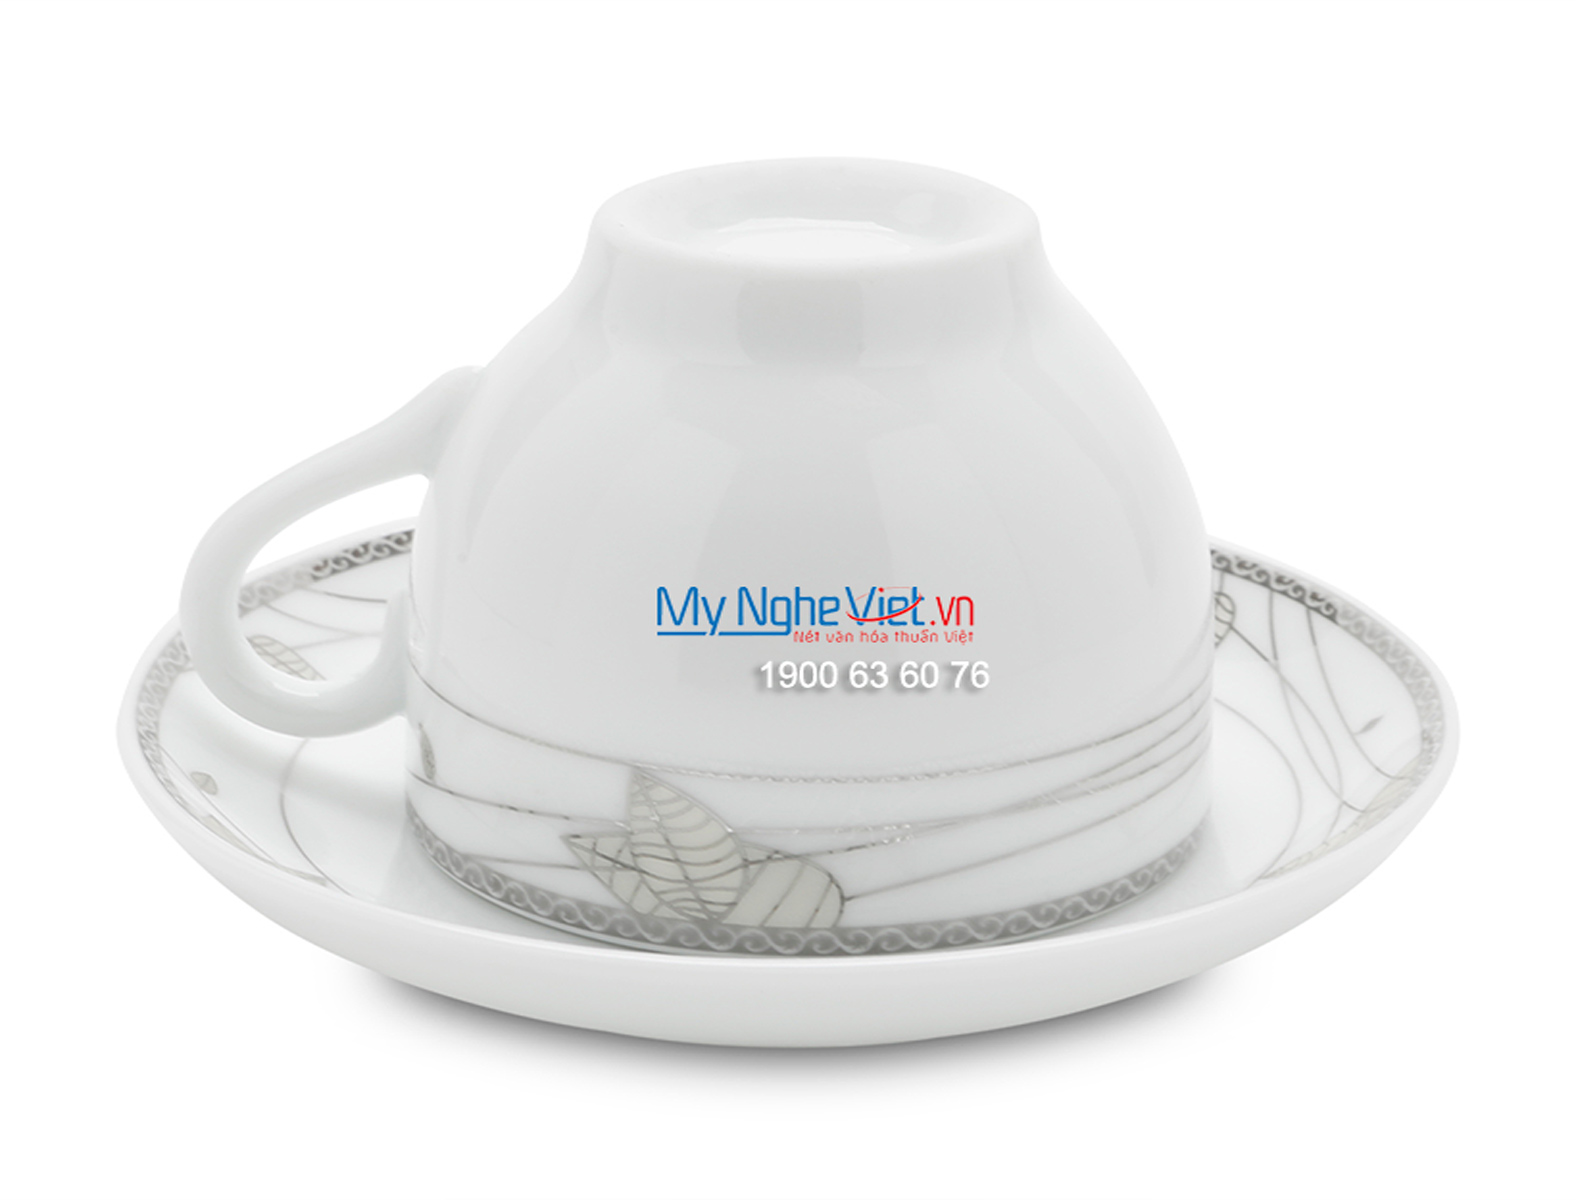 Bộ bình trà men trắng vẽ hoa văn bạc MNV-TS470 (HÀNG ĐẶT)